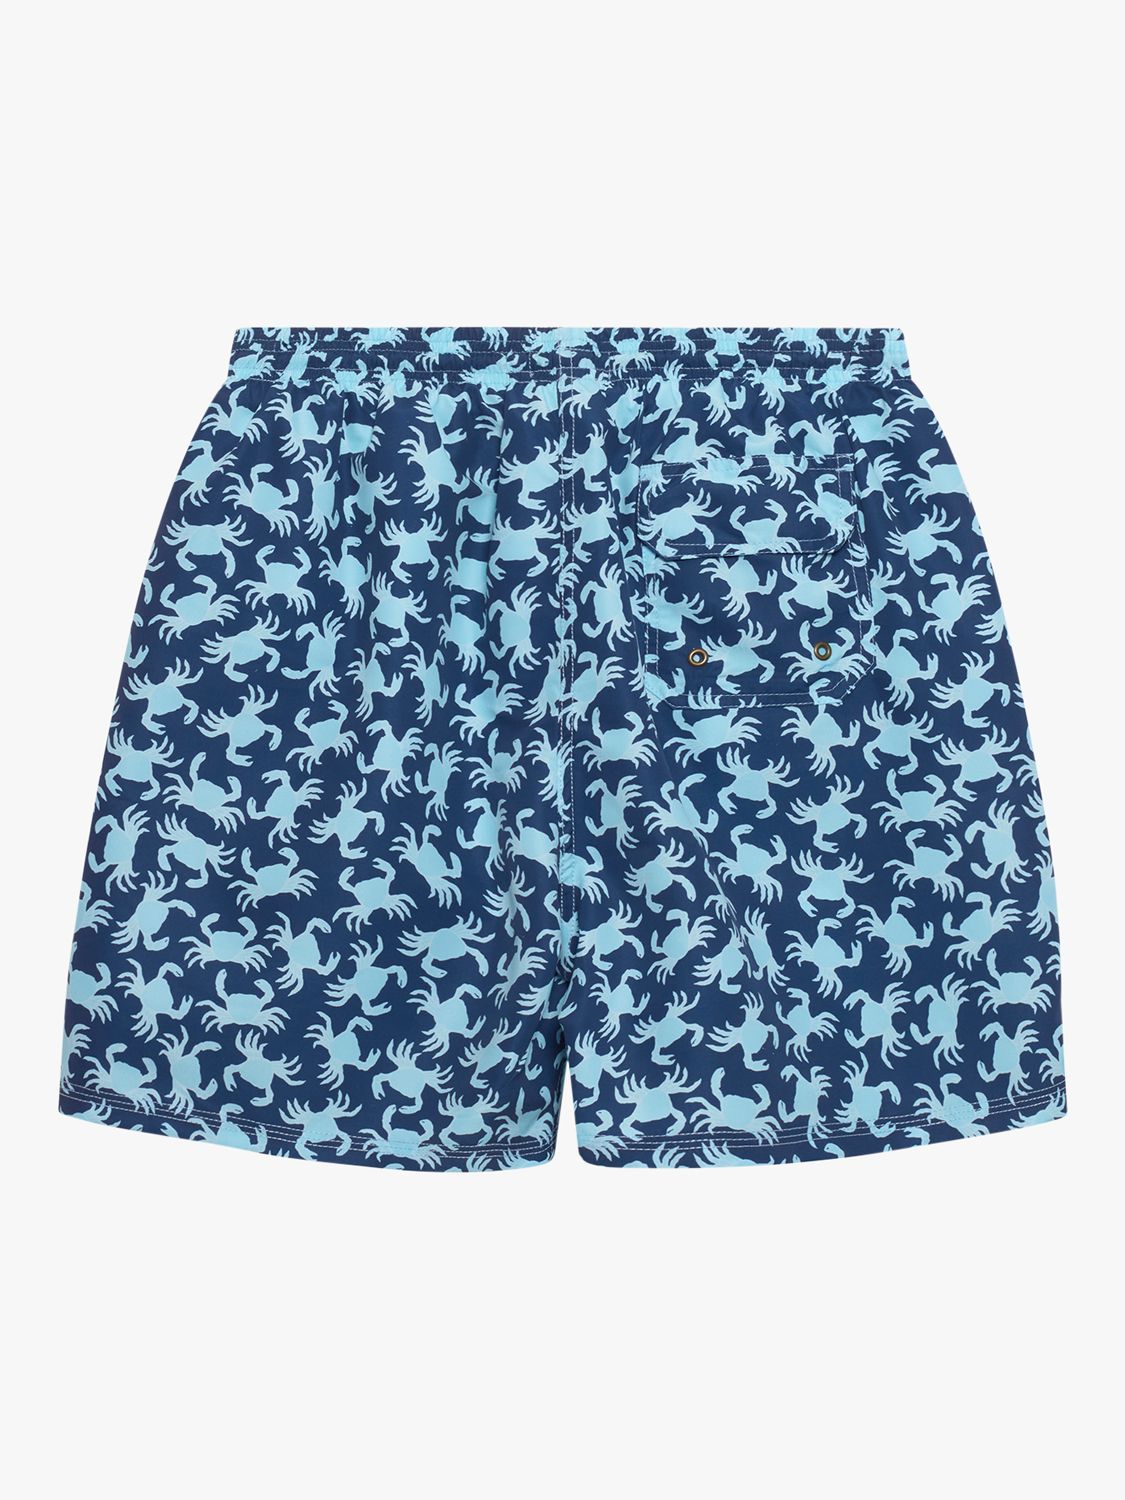 Trotters Crab Swim Shorts, Navy/Aqua, L